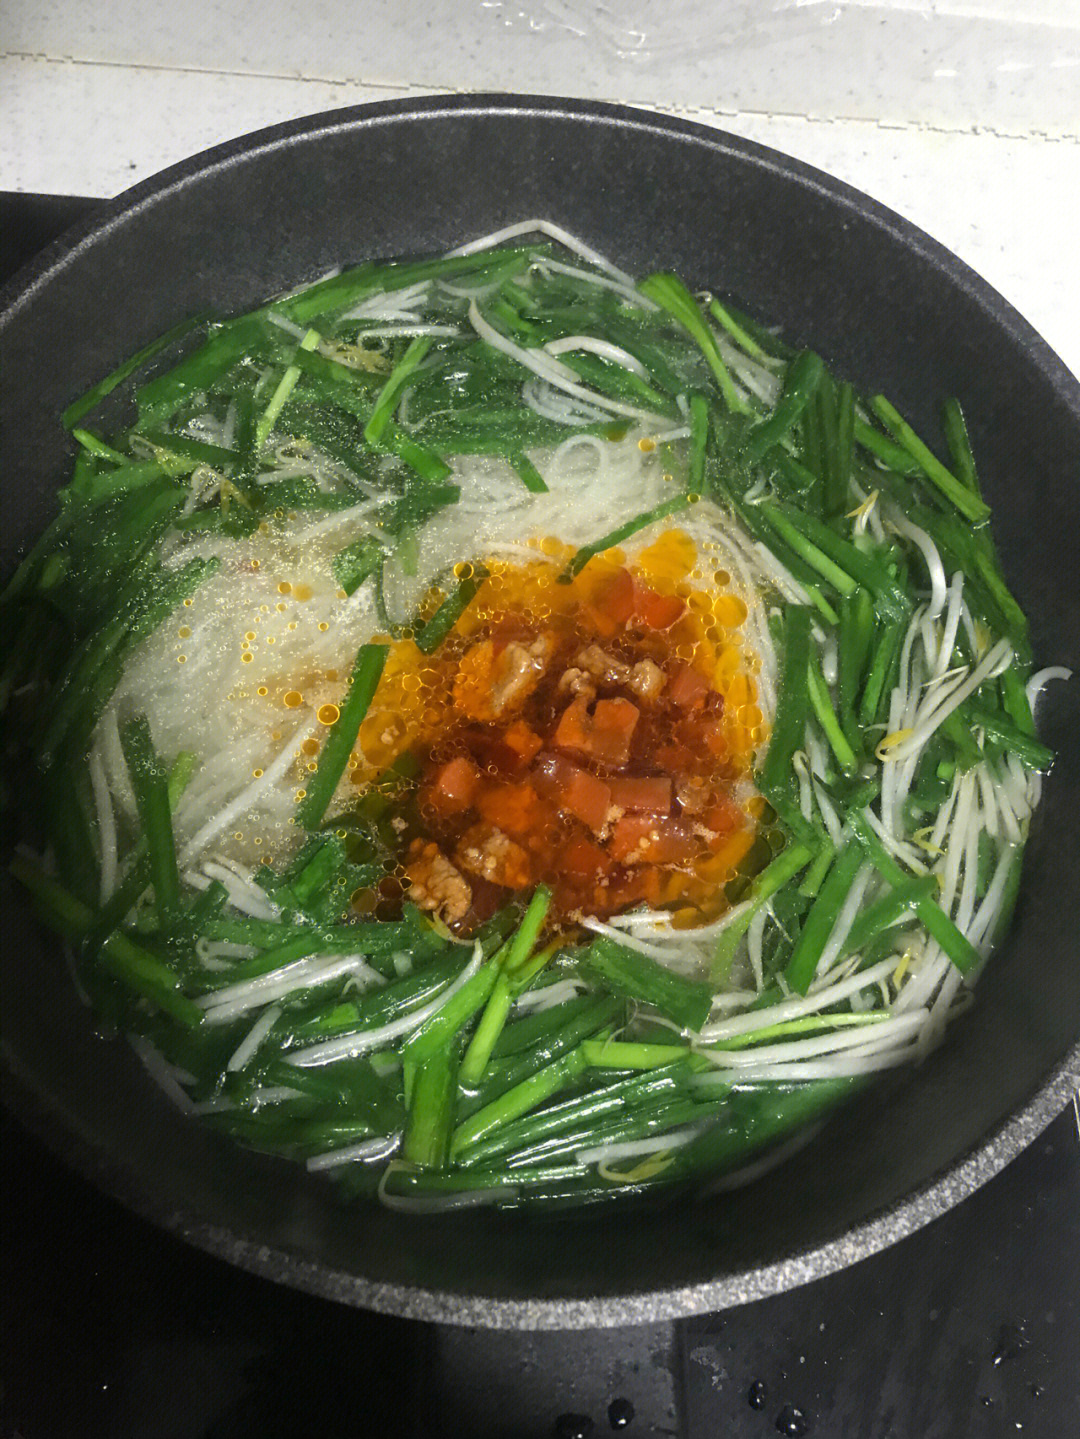 主料:韭菜 绿豆芽 米线 已经做好的辣肉做法:1